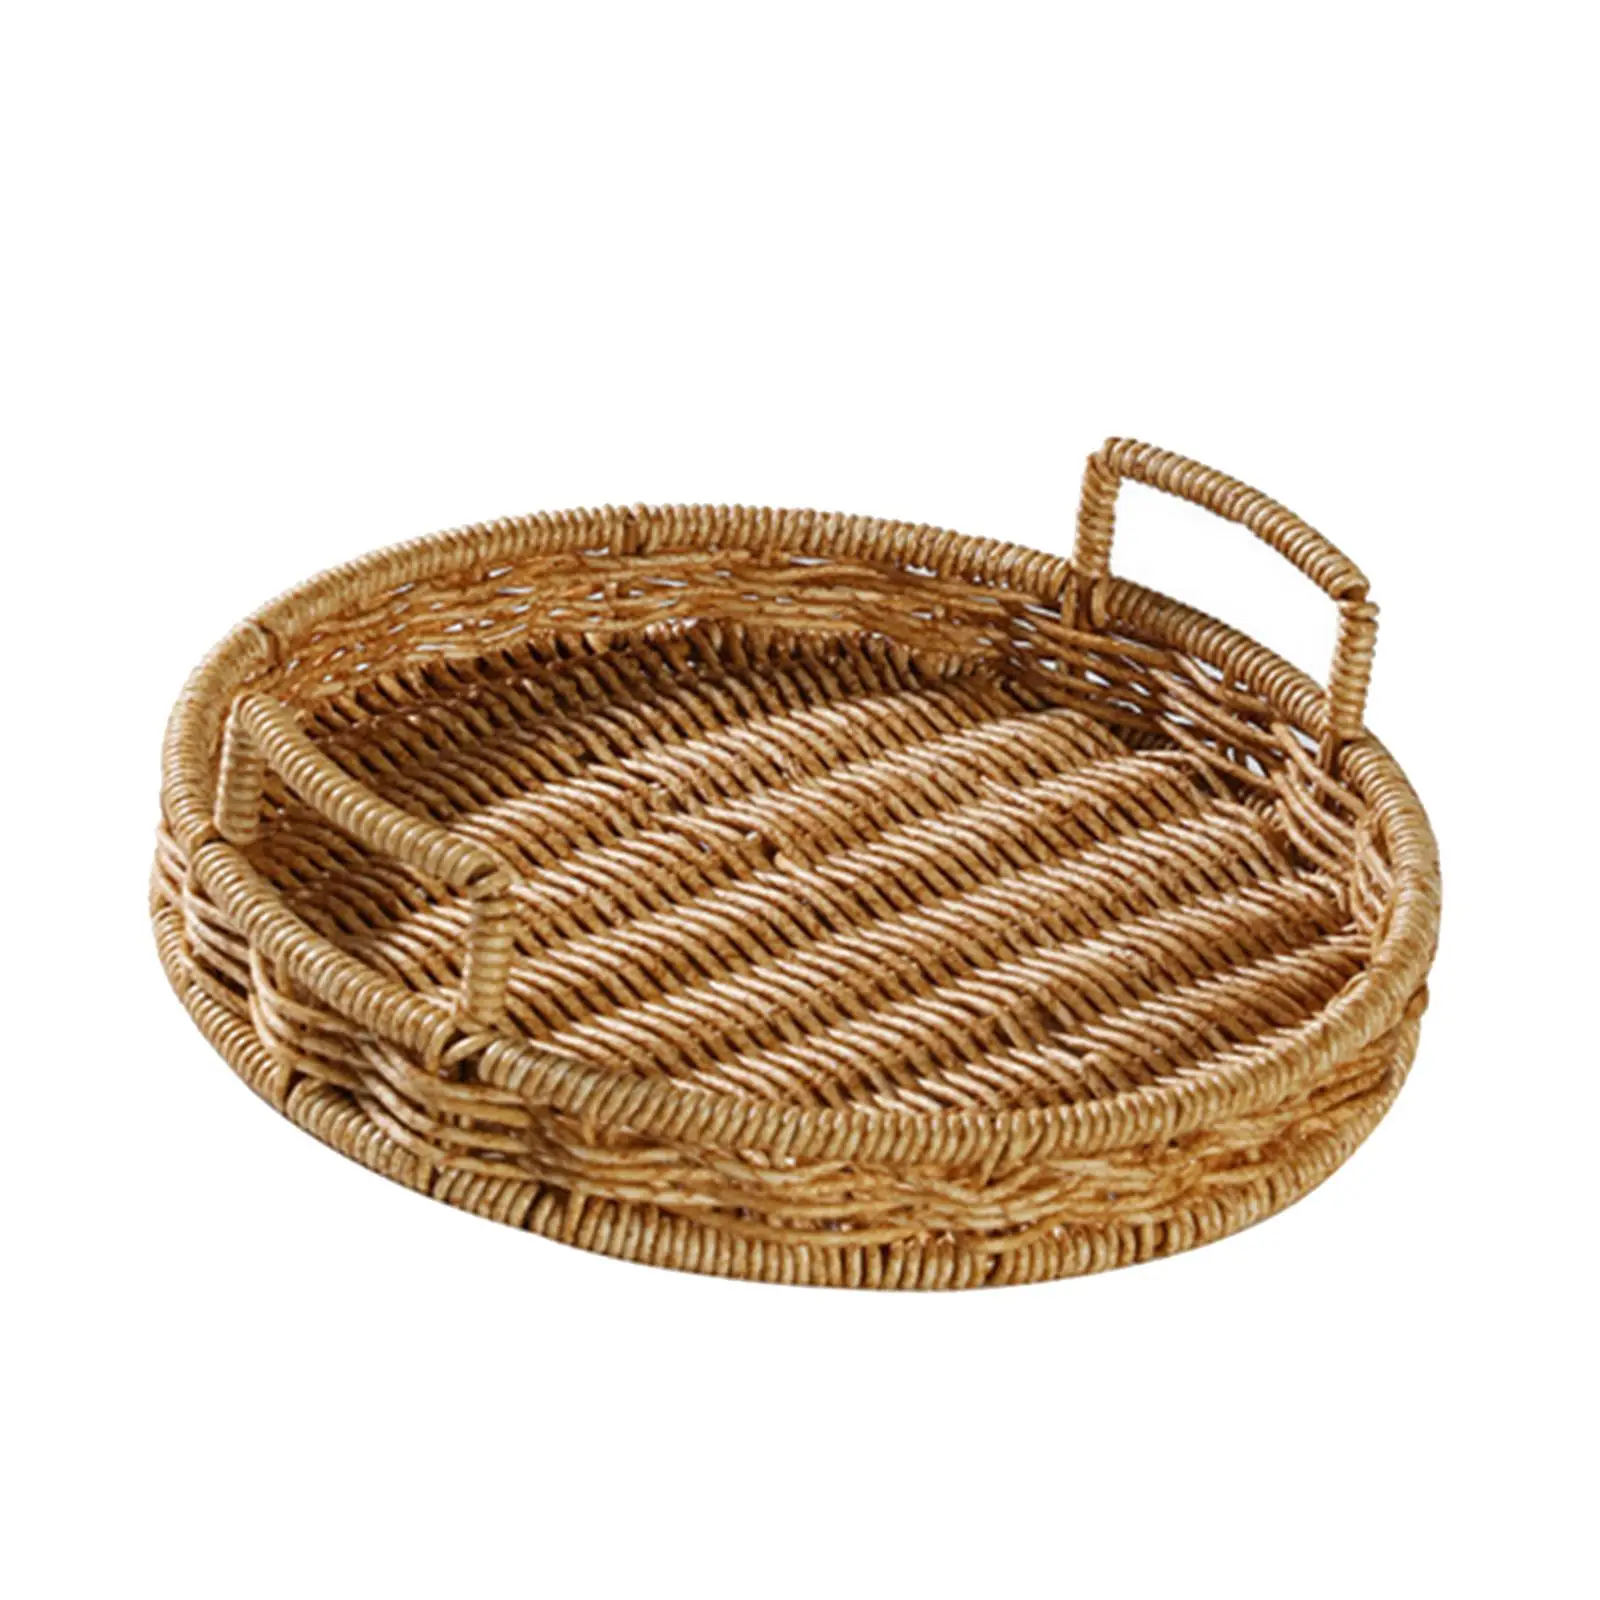 Hand Woven Rattan Storage Tray Fruit Baskets Wicker Tray for Breakfast Bread